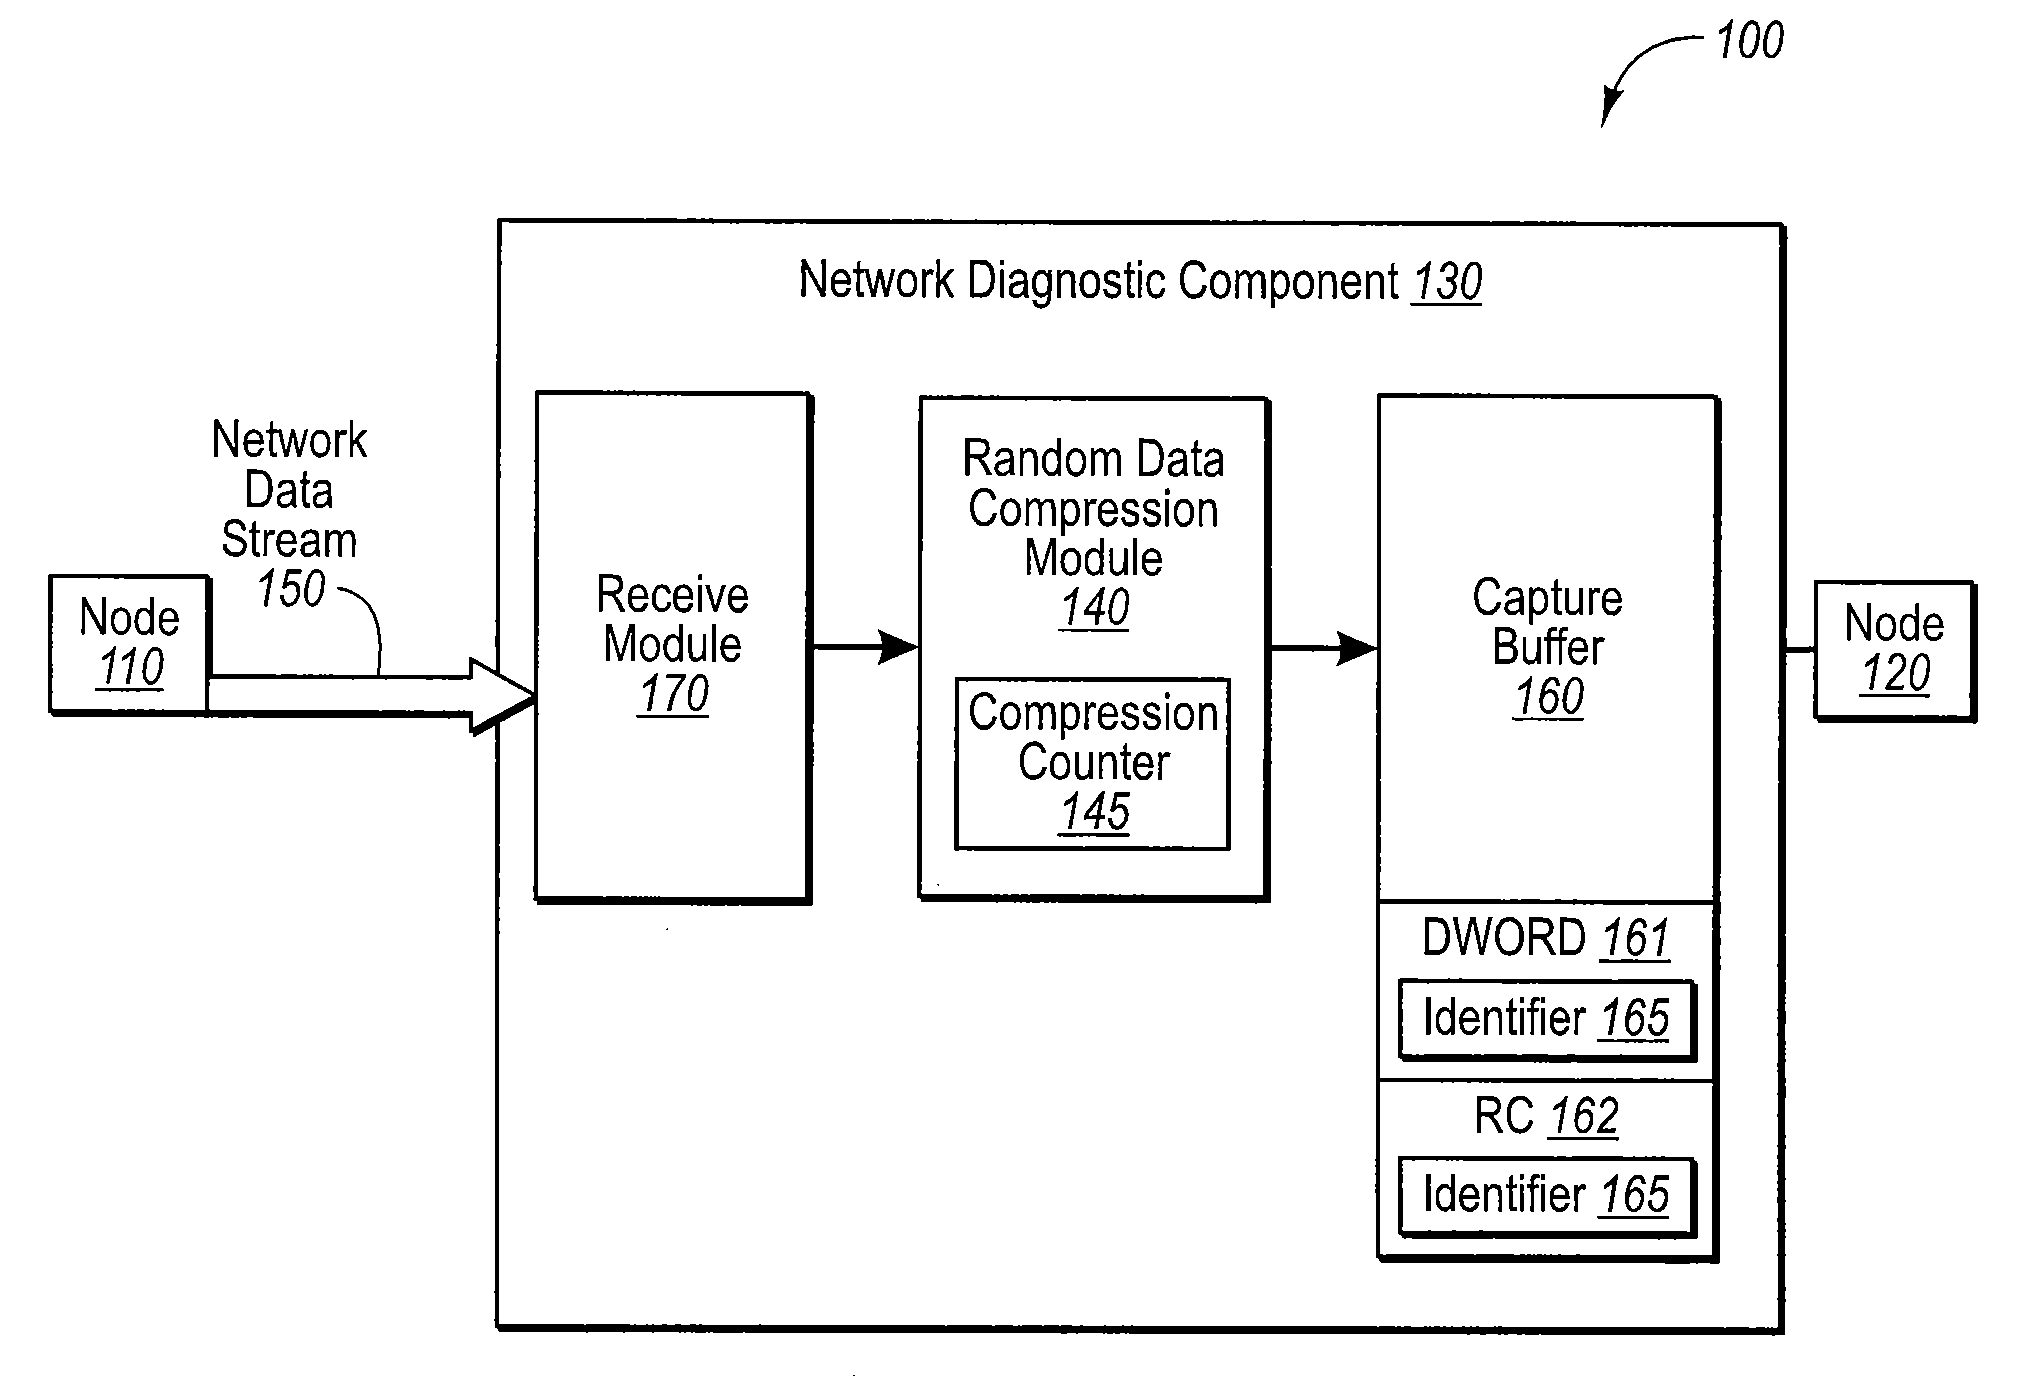 Random data compression scheme in a network diagnostic component